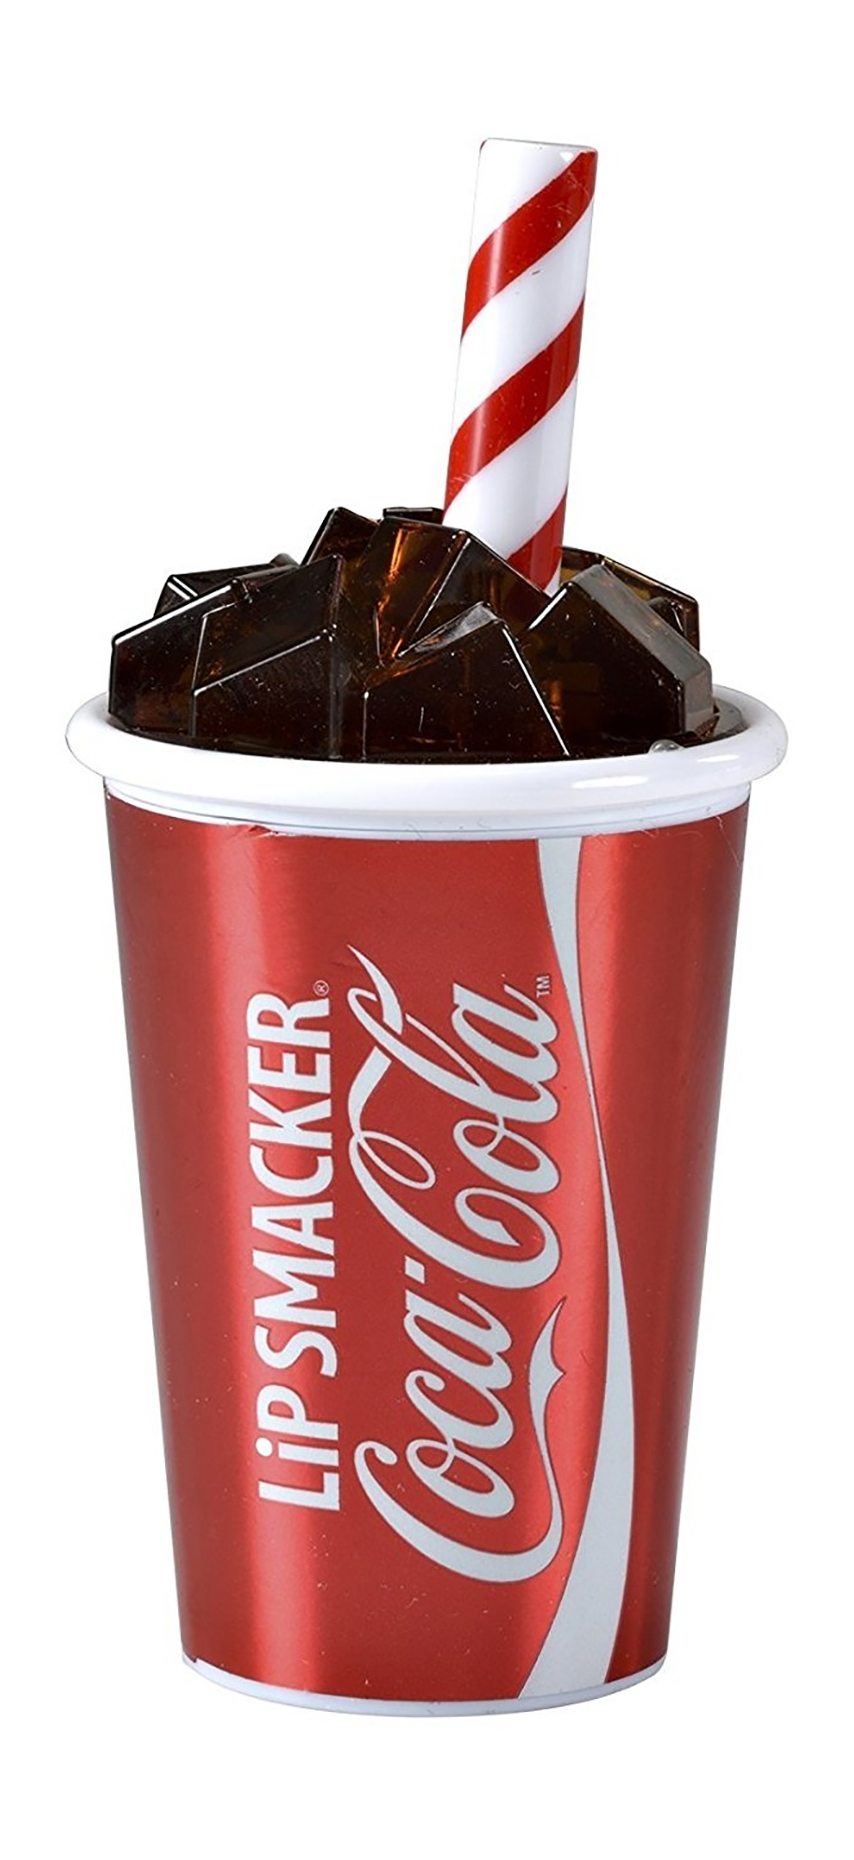 Бальзам для губ Lip Smacker Coca-Cola Cup Lip Balm увлажняющий, с ароматом колы 7,4 г мотивация как она есть как coca cola ernst